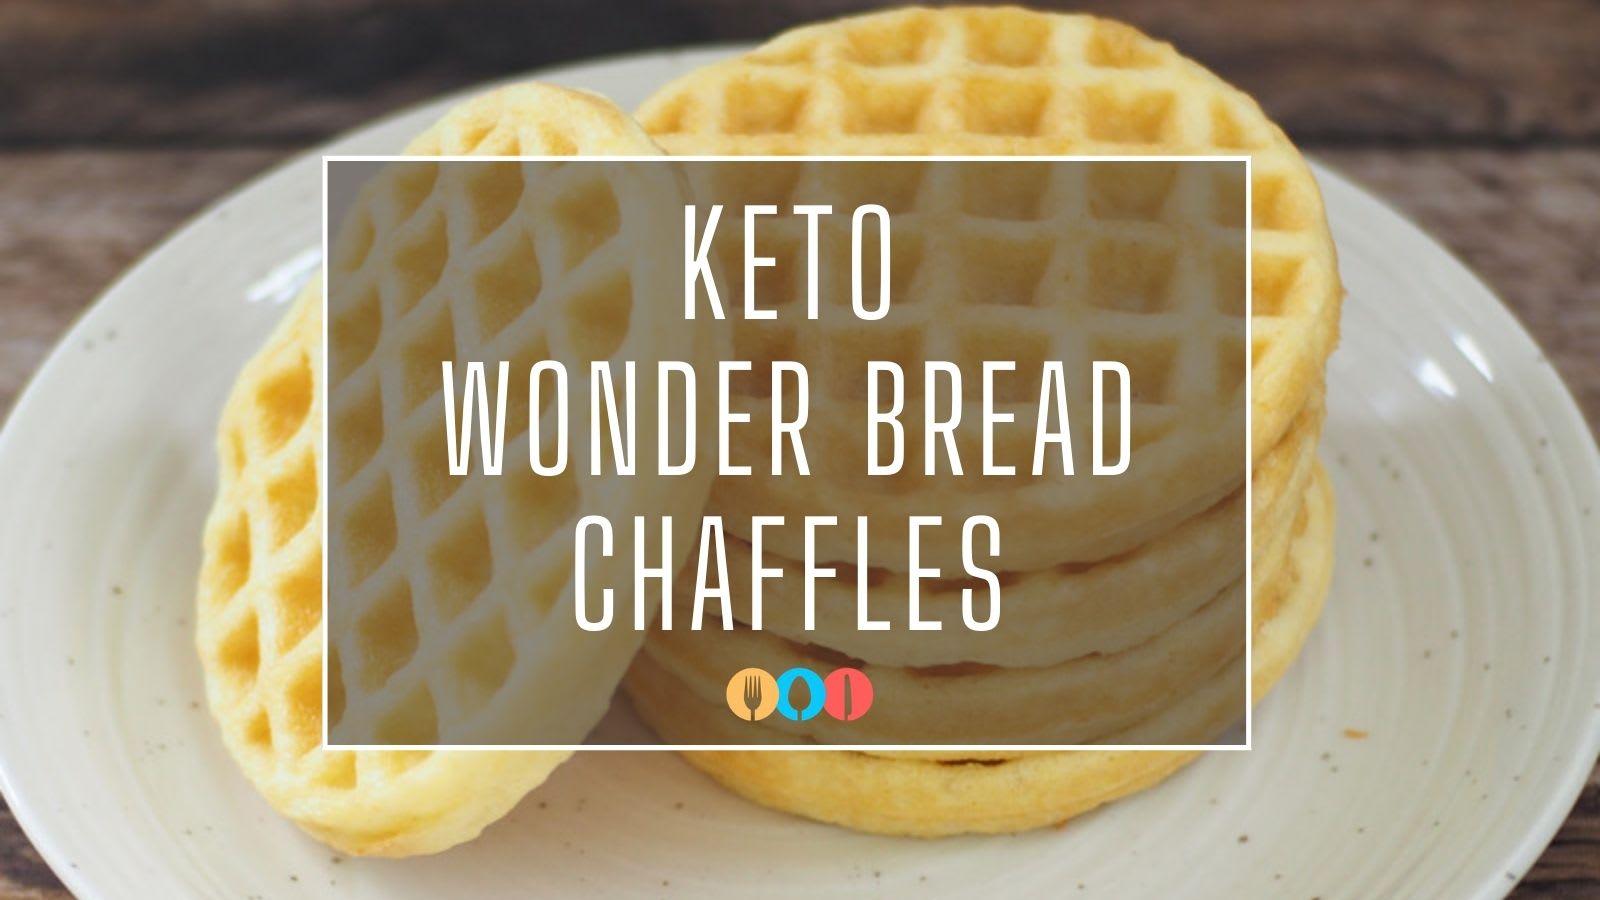 White Bread Bread Keto Chaffle Recipe - Saving You Dinero